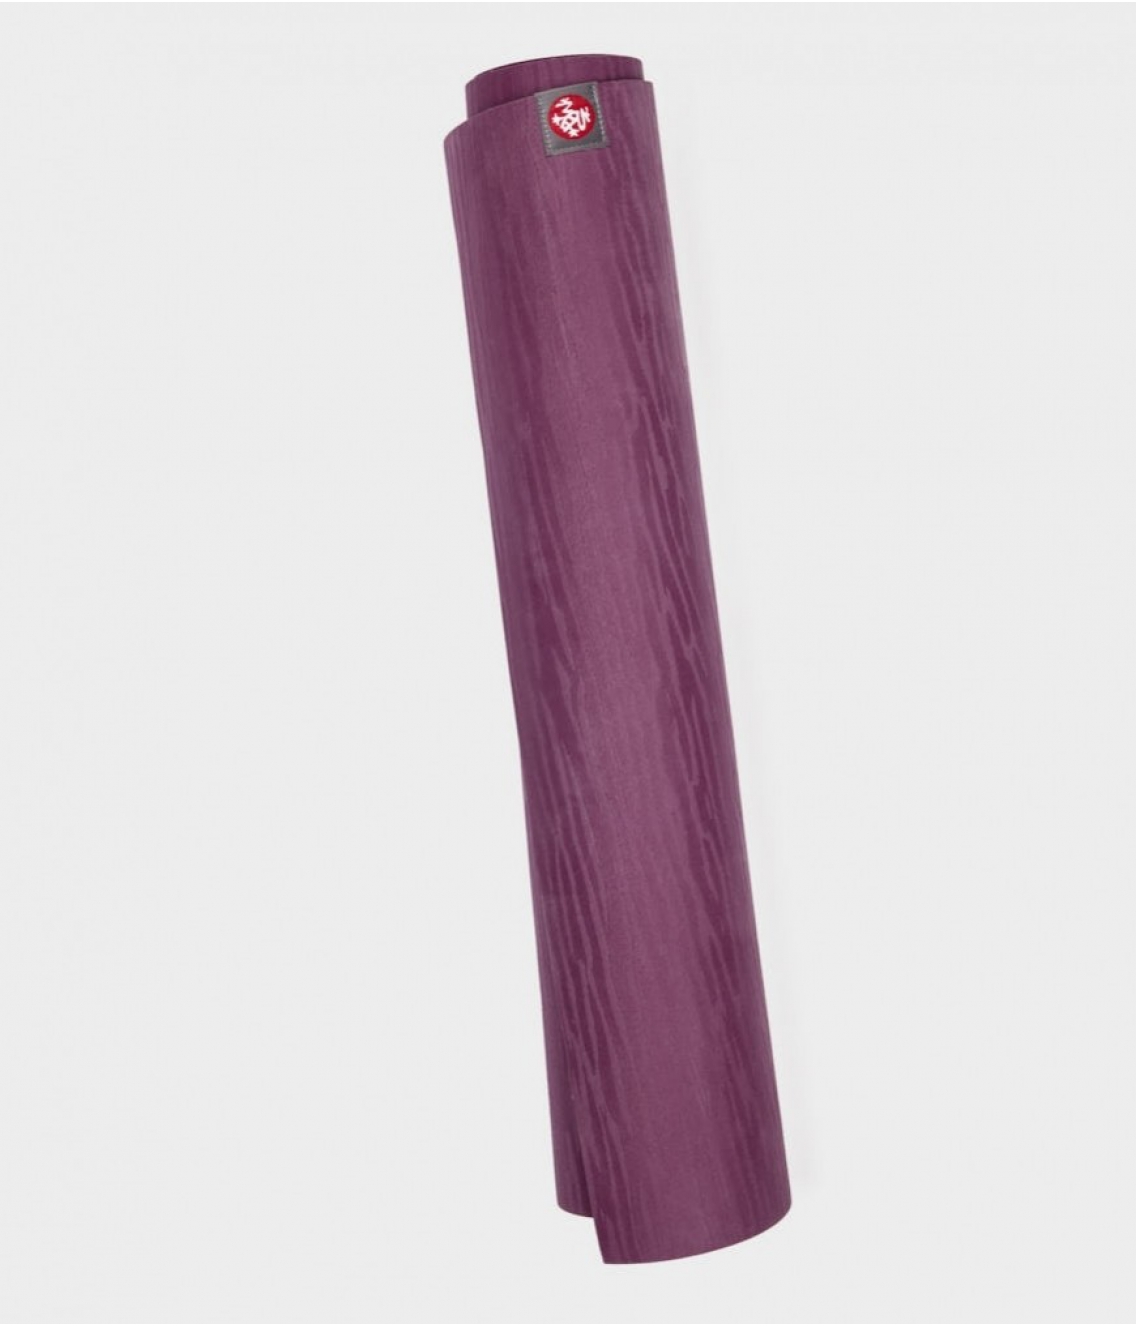 Профессиональный каучуковый коврик для йоги Manduka eKO lite 180*61*0,4 см - Acai